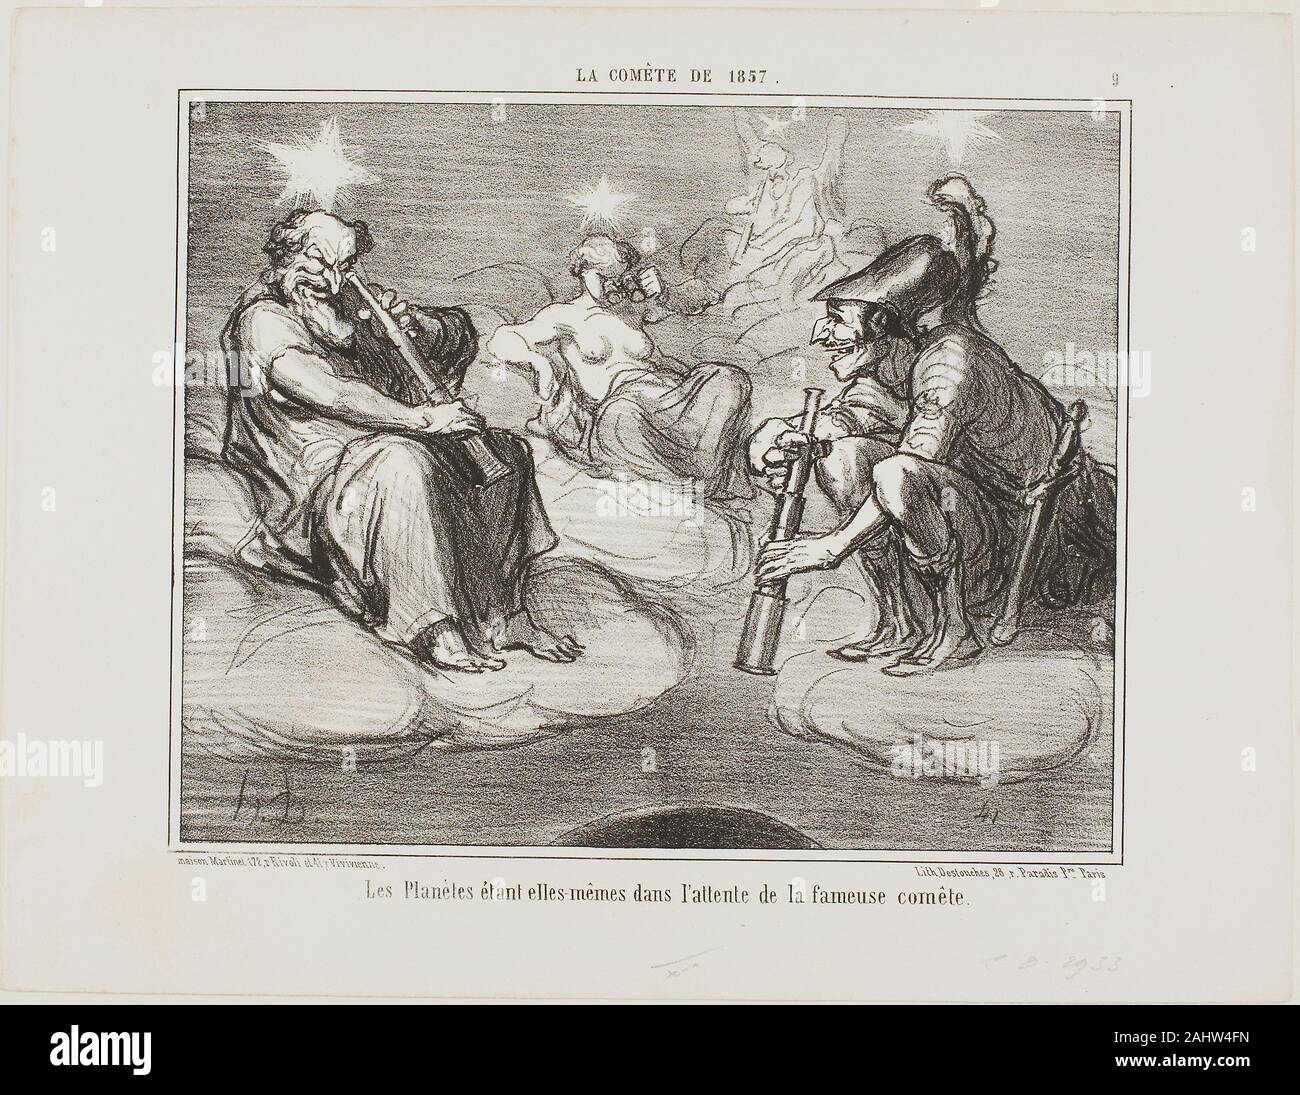 Honoré-Victorin Daumier. Même les planètes observent avec intérêt l'arrivée de la célèbre comète, plate 9 de la Cométe de 1857. 1857. La France. Lithographie en noir sur papier vélin blanc Banque D'Images